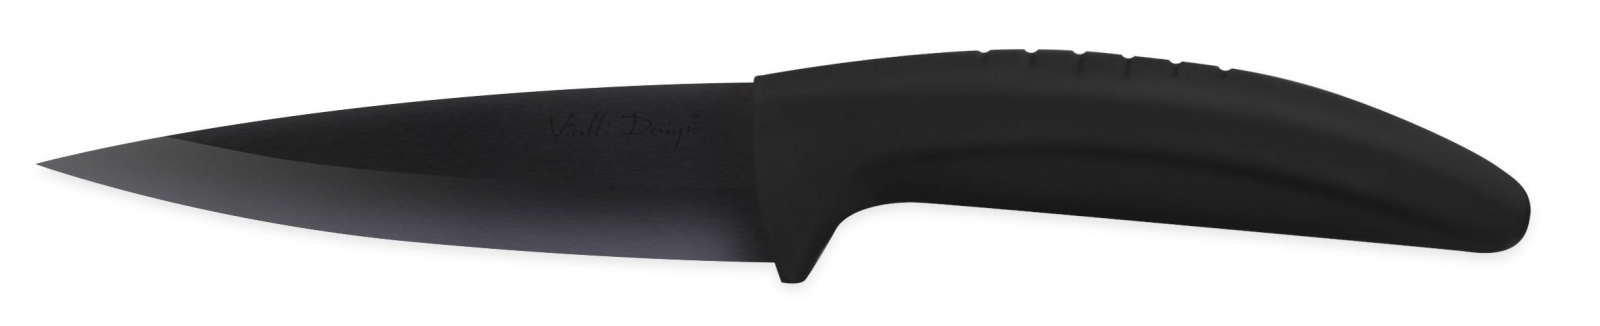 Nóż ceramiczny do obierania 9,5 cm B095A Vialli Design